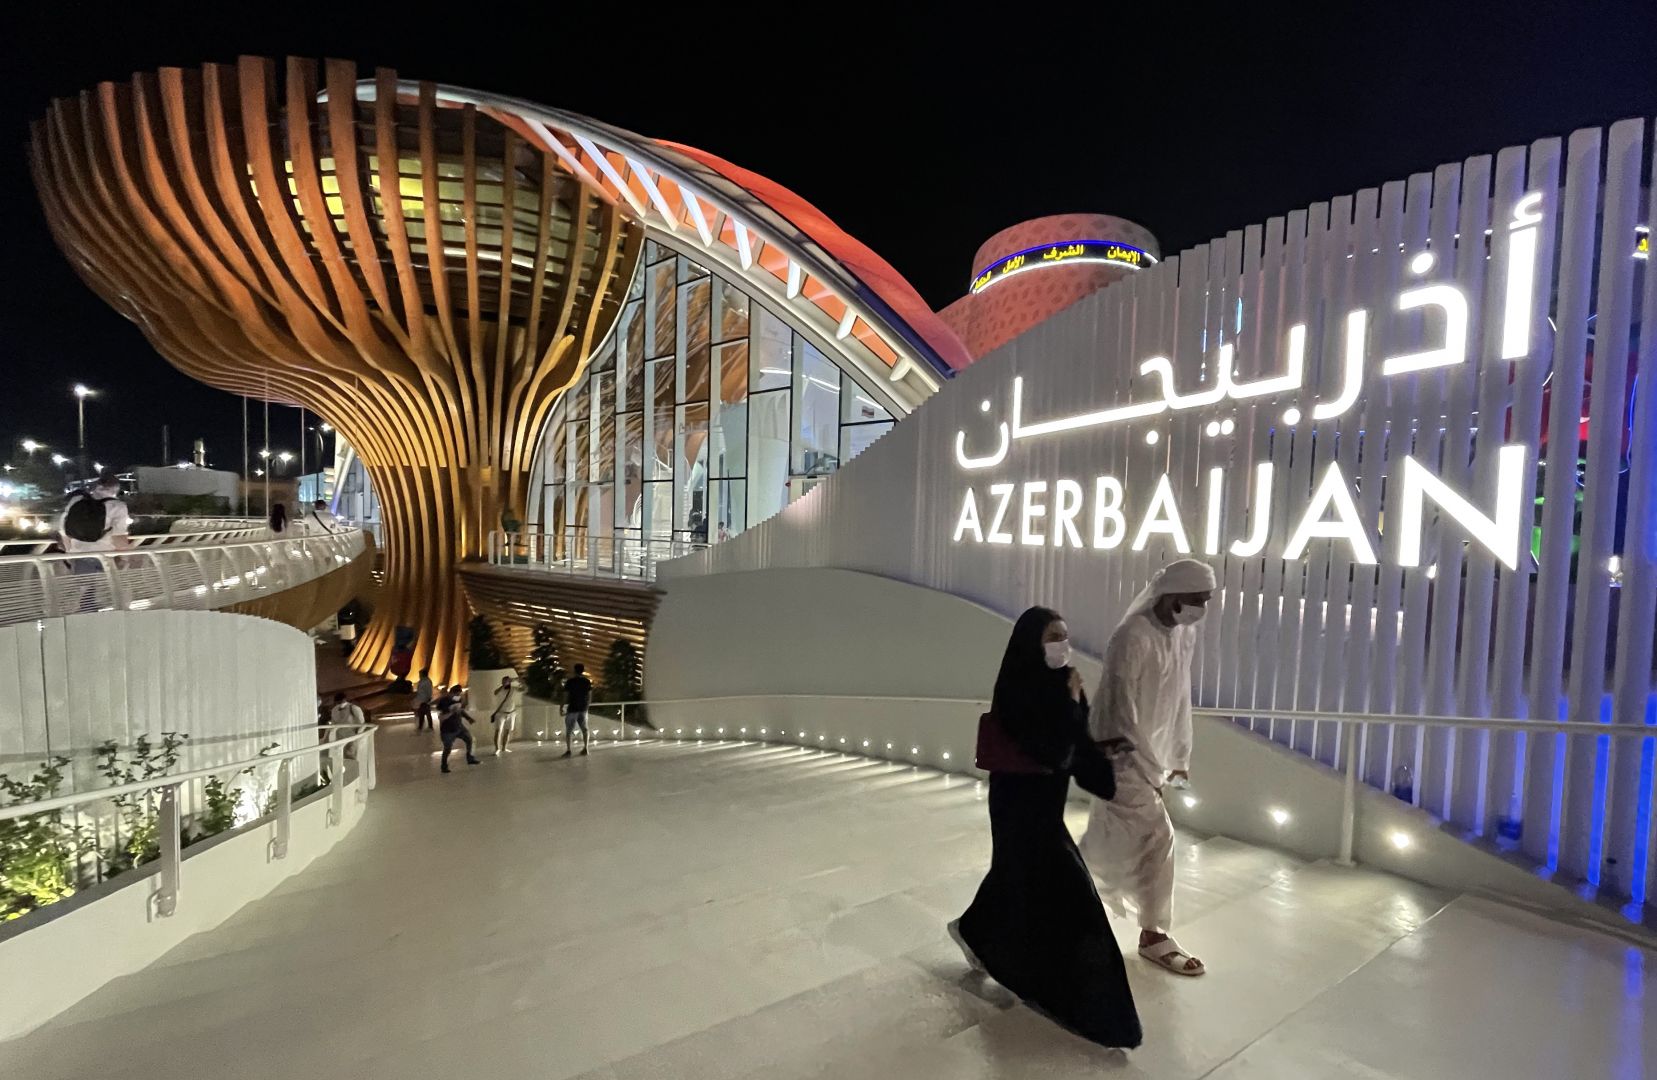 LE PAVILLON DE L'AZERBAÏDJAN À L'EXPO UNIVERSELLE DE DUBAI